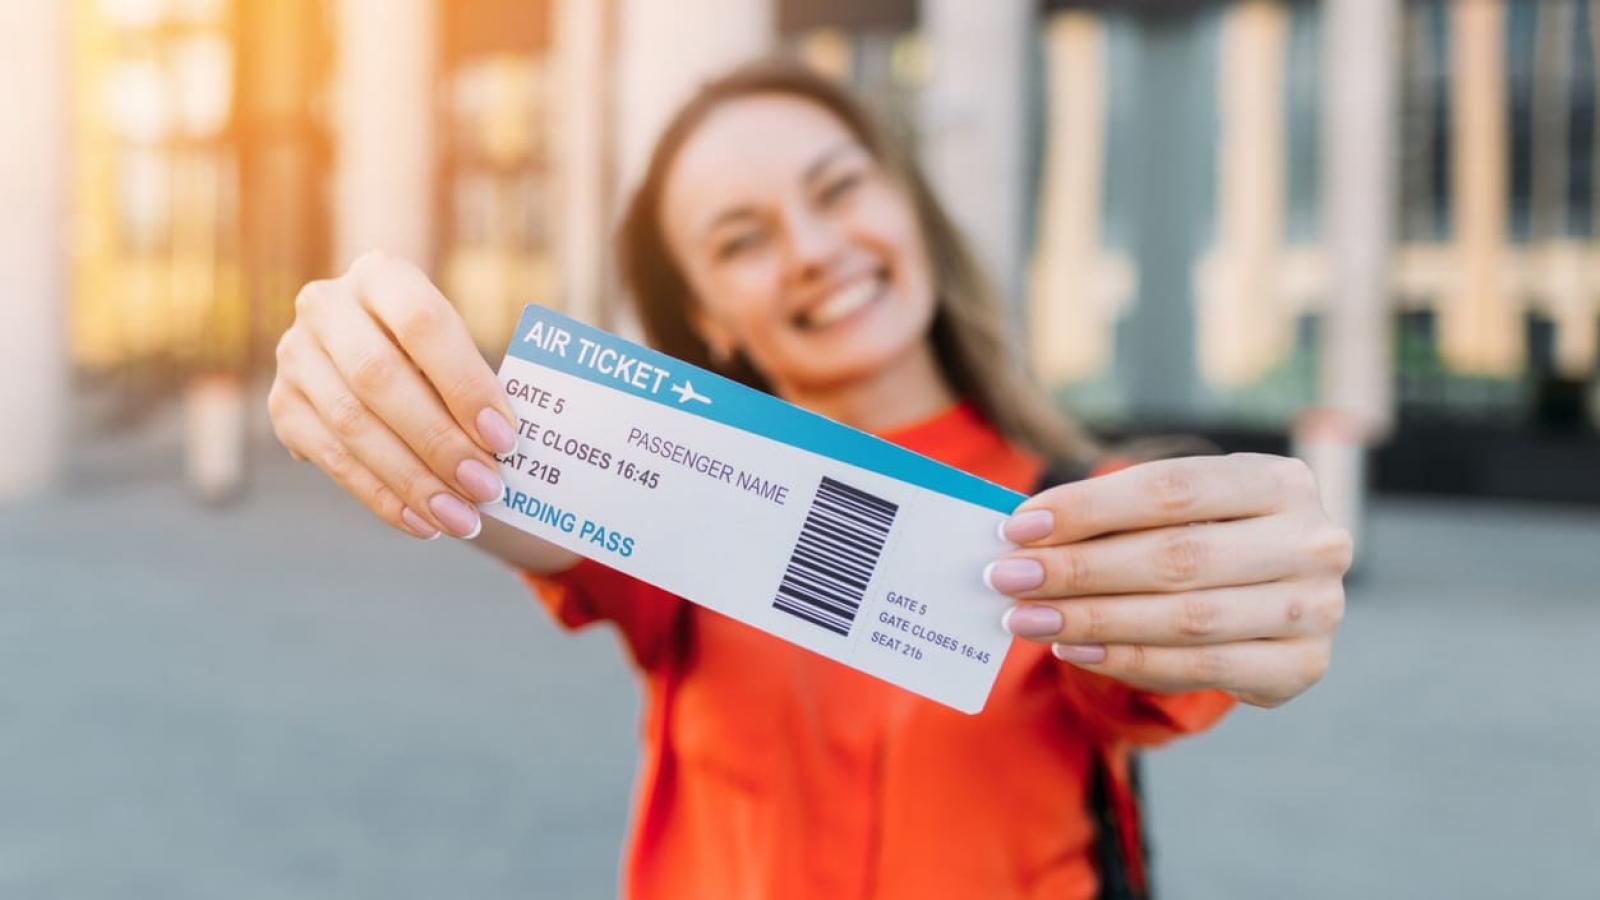 Аэропорт покупка билетов. Билет в руке. Авиабилеты в руках. Девушка с билетом в руках. Девушка держит билет.